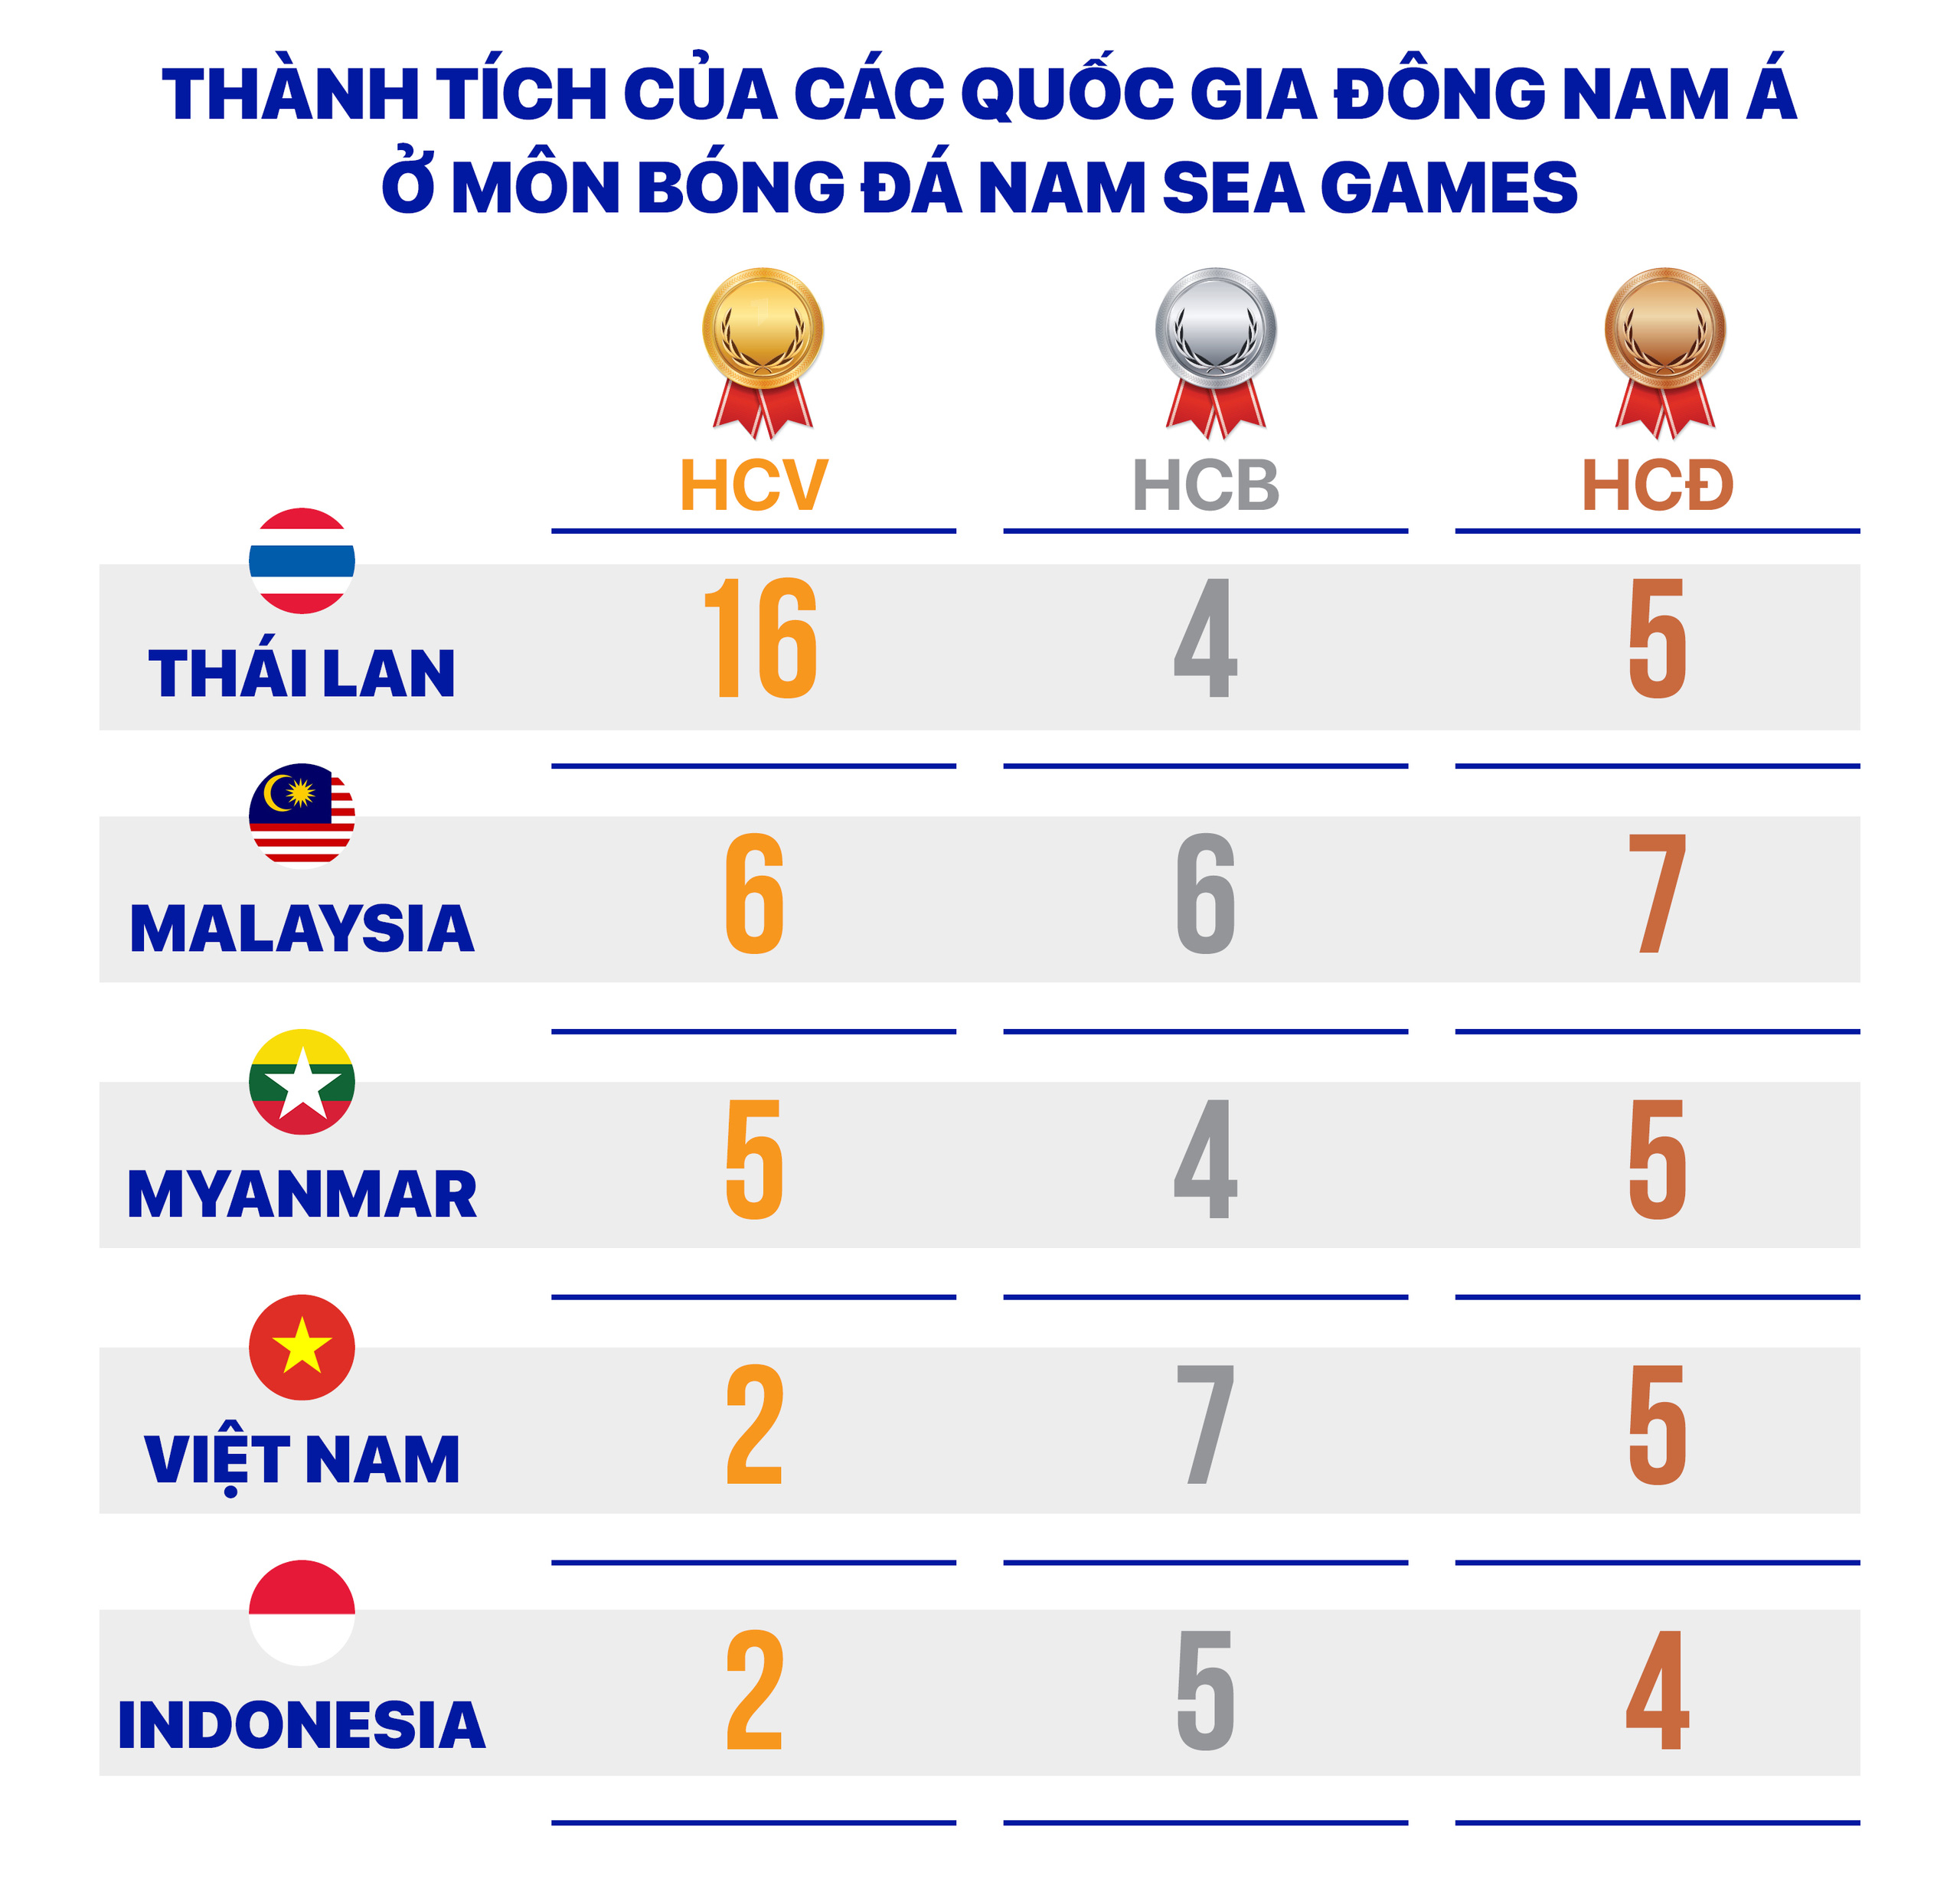 東南亞足球渴望在第 31 屆東南亞運動會上獲得金牌 - 照片 15。